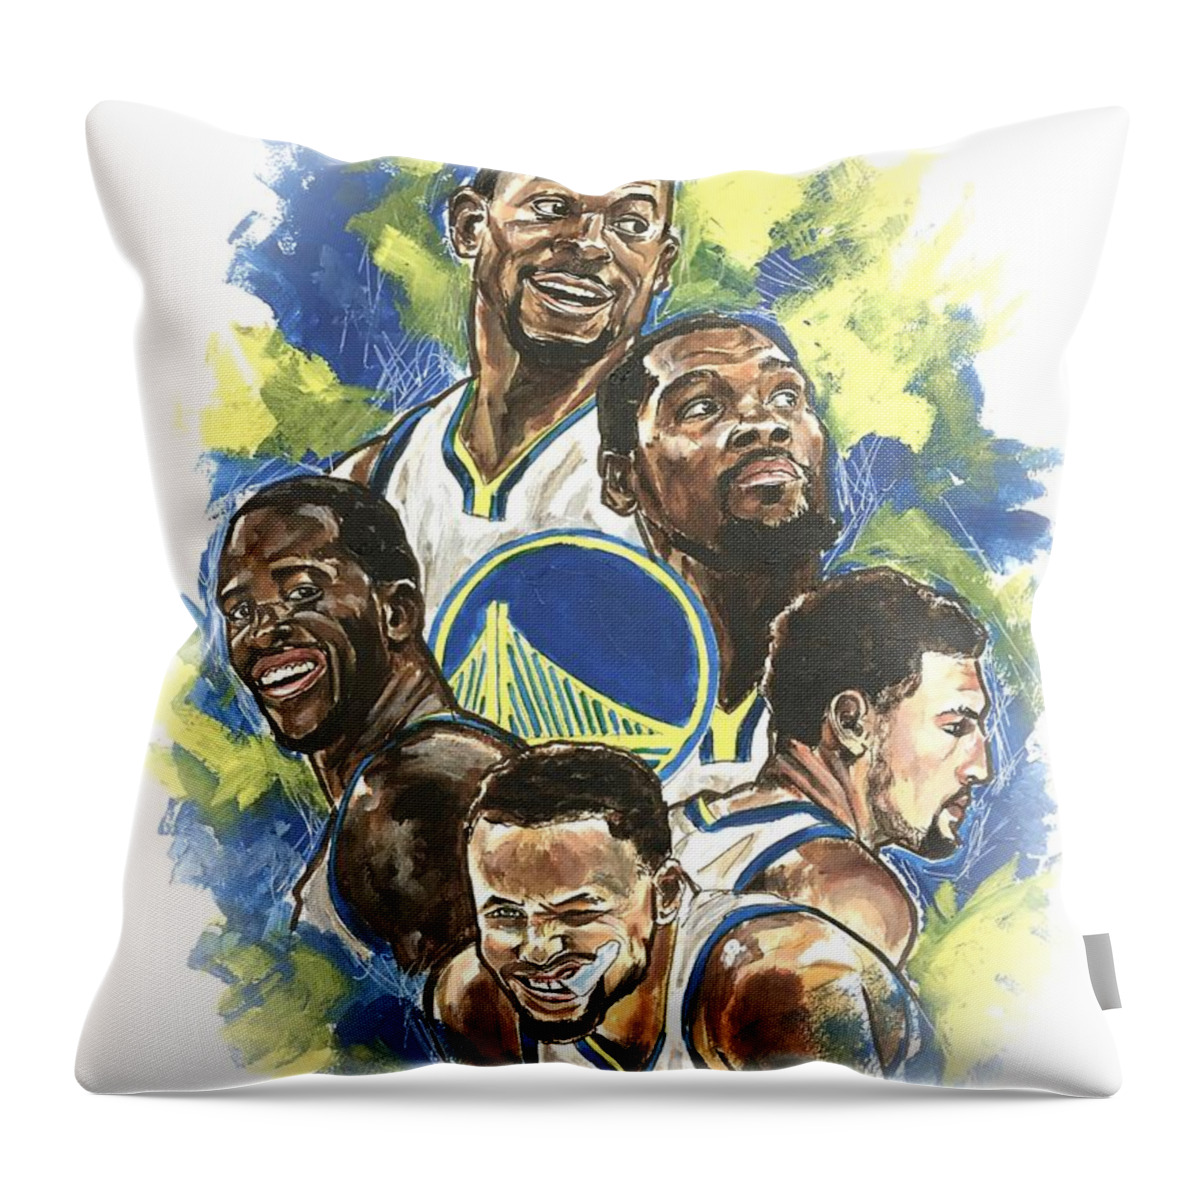 Golden State Warriors Throw Pillow featuring the painting Warriors by Joel Tesch